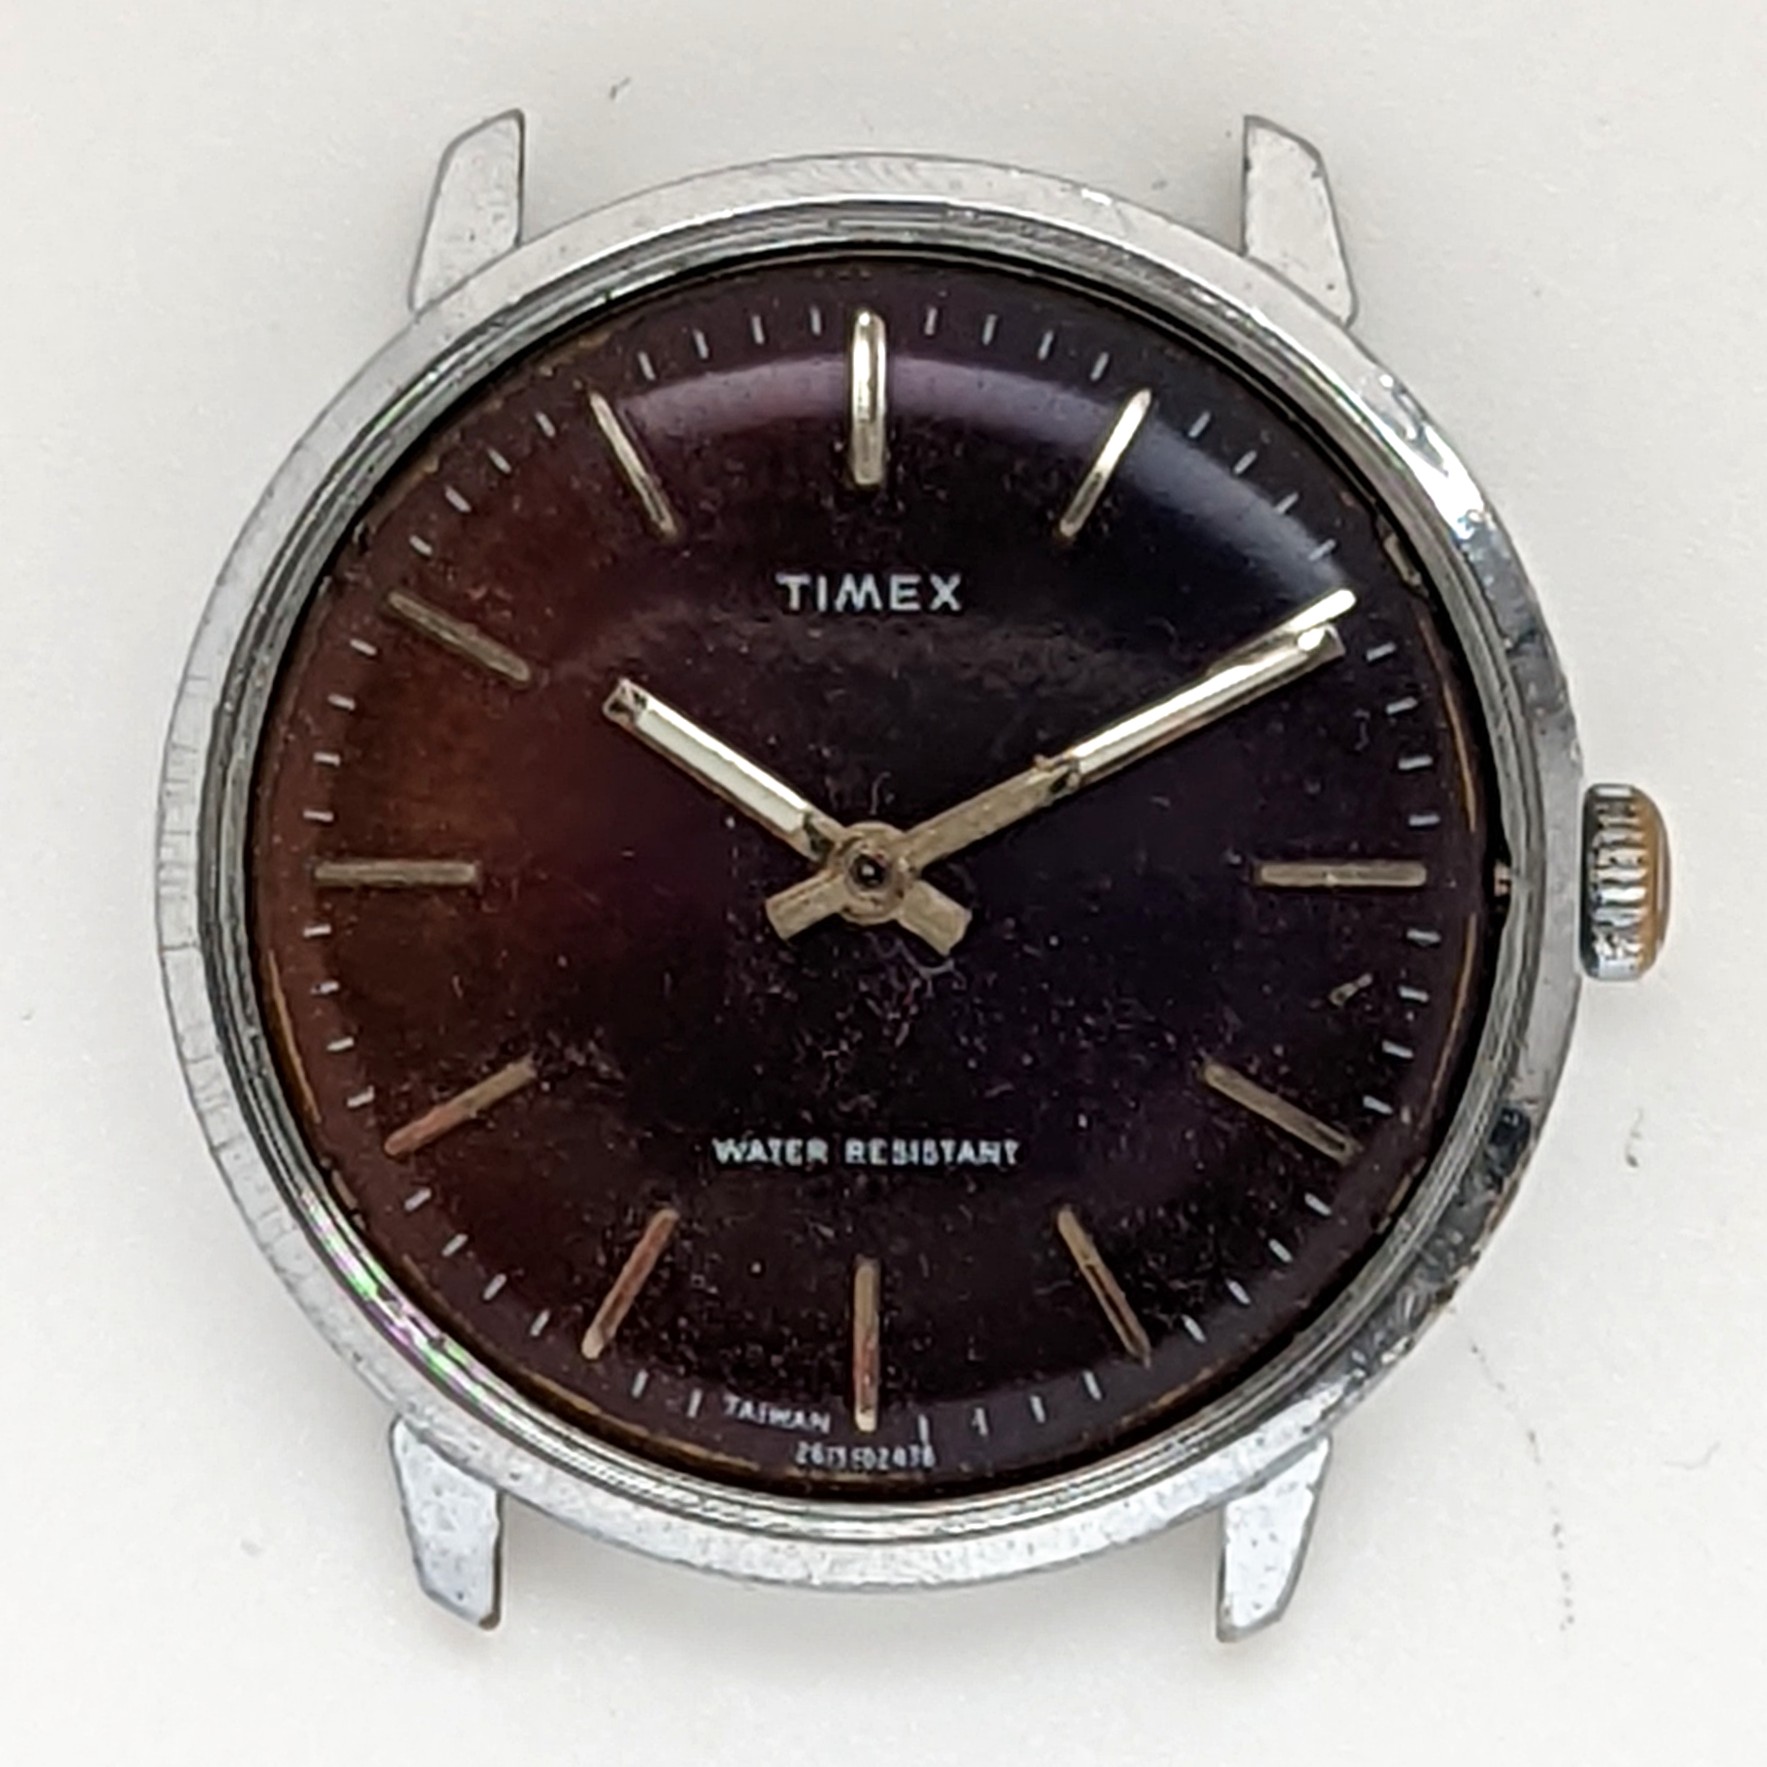 Timex Marlin 26151 02478 [1978]